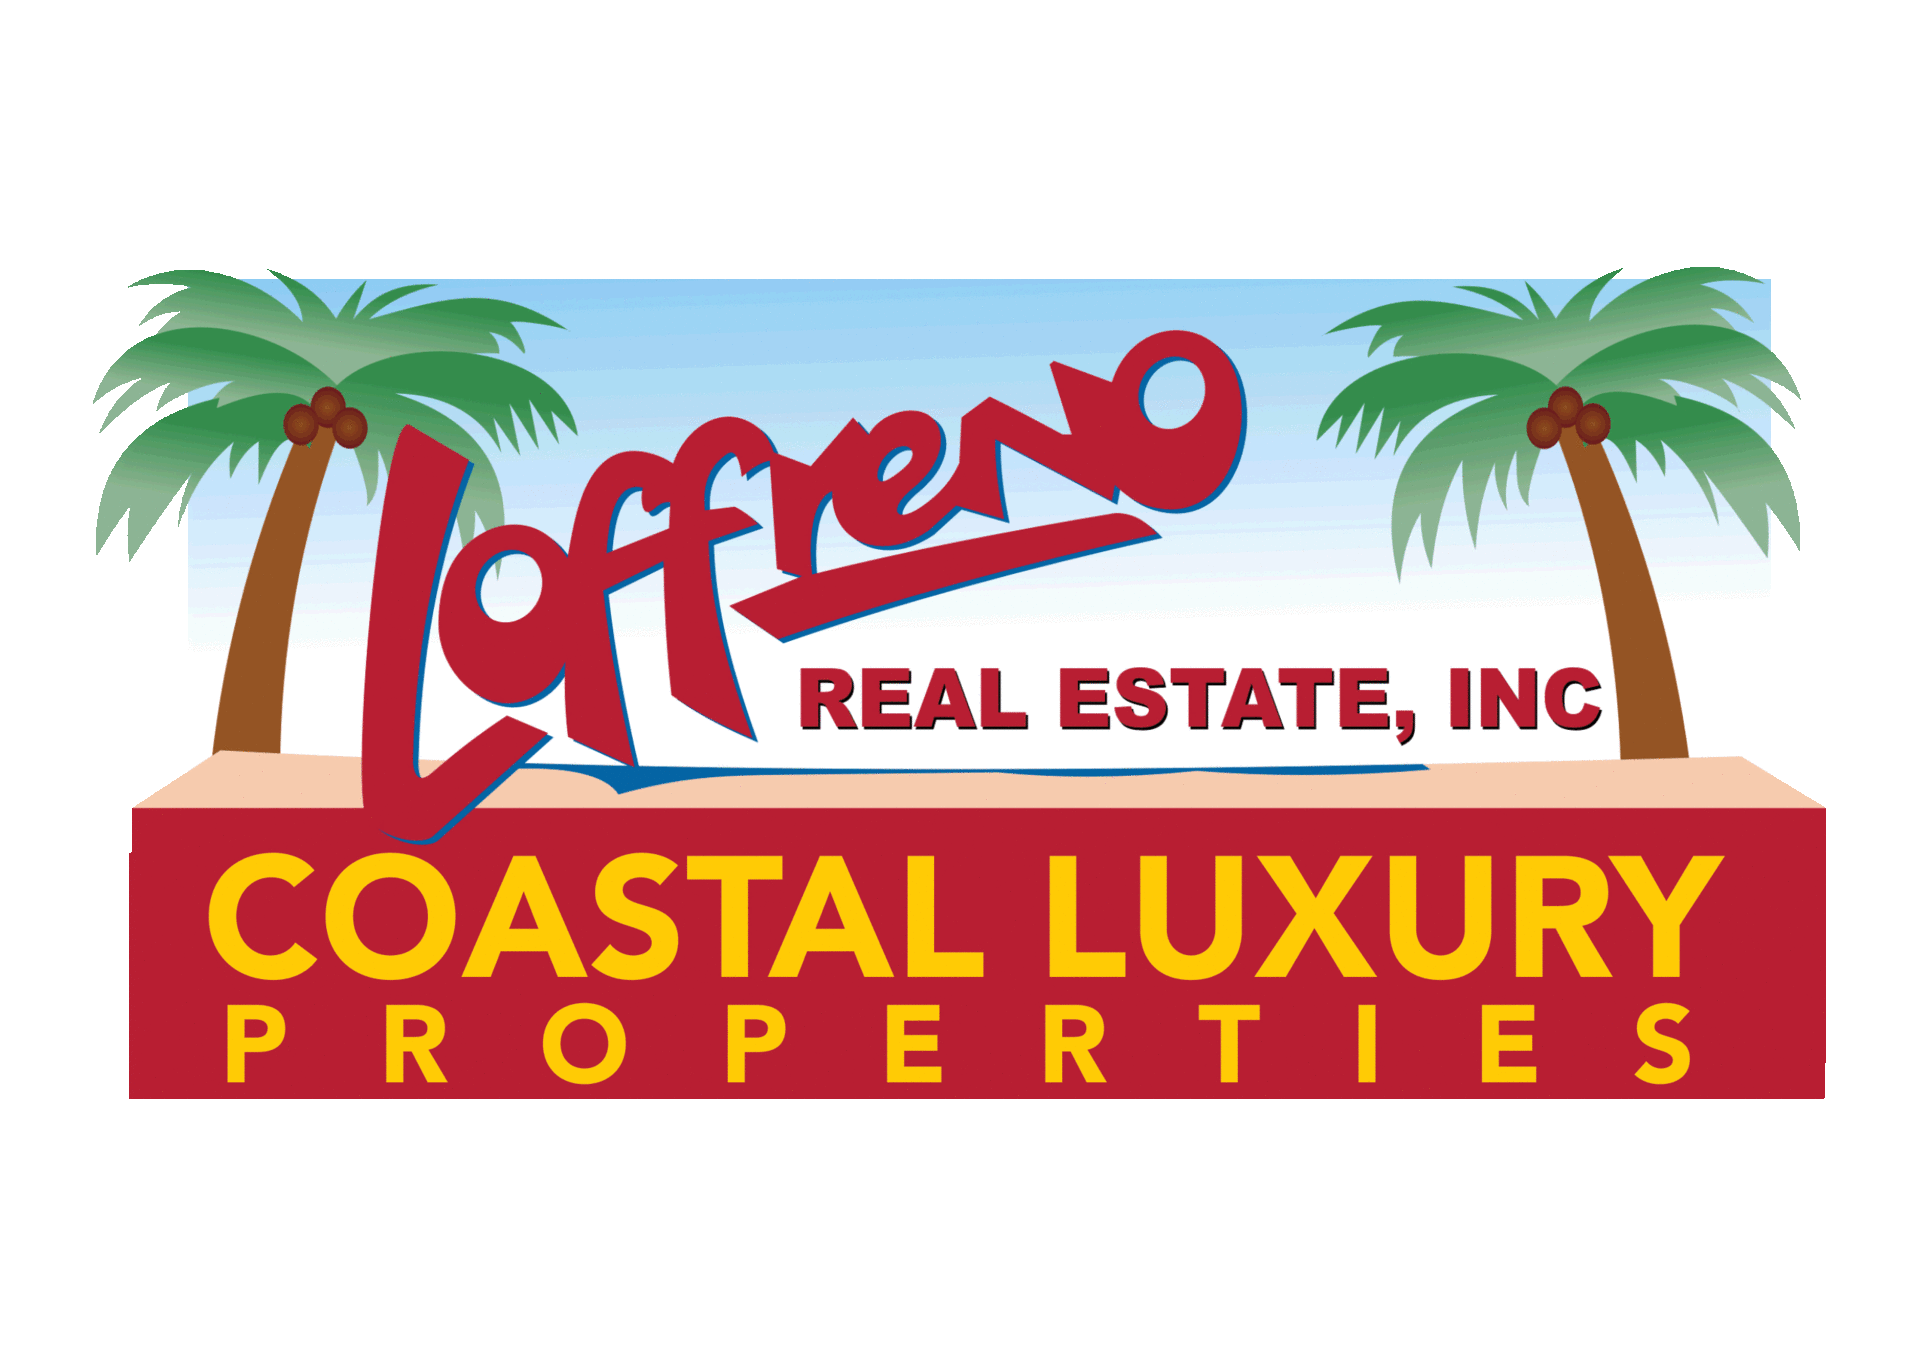 Loffreno Real Estate Inc. Realtors